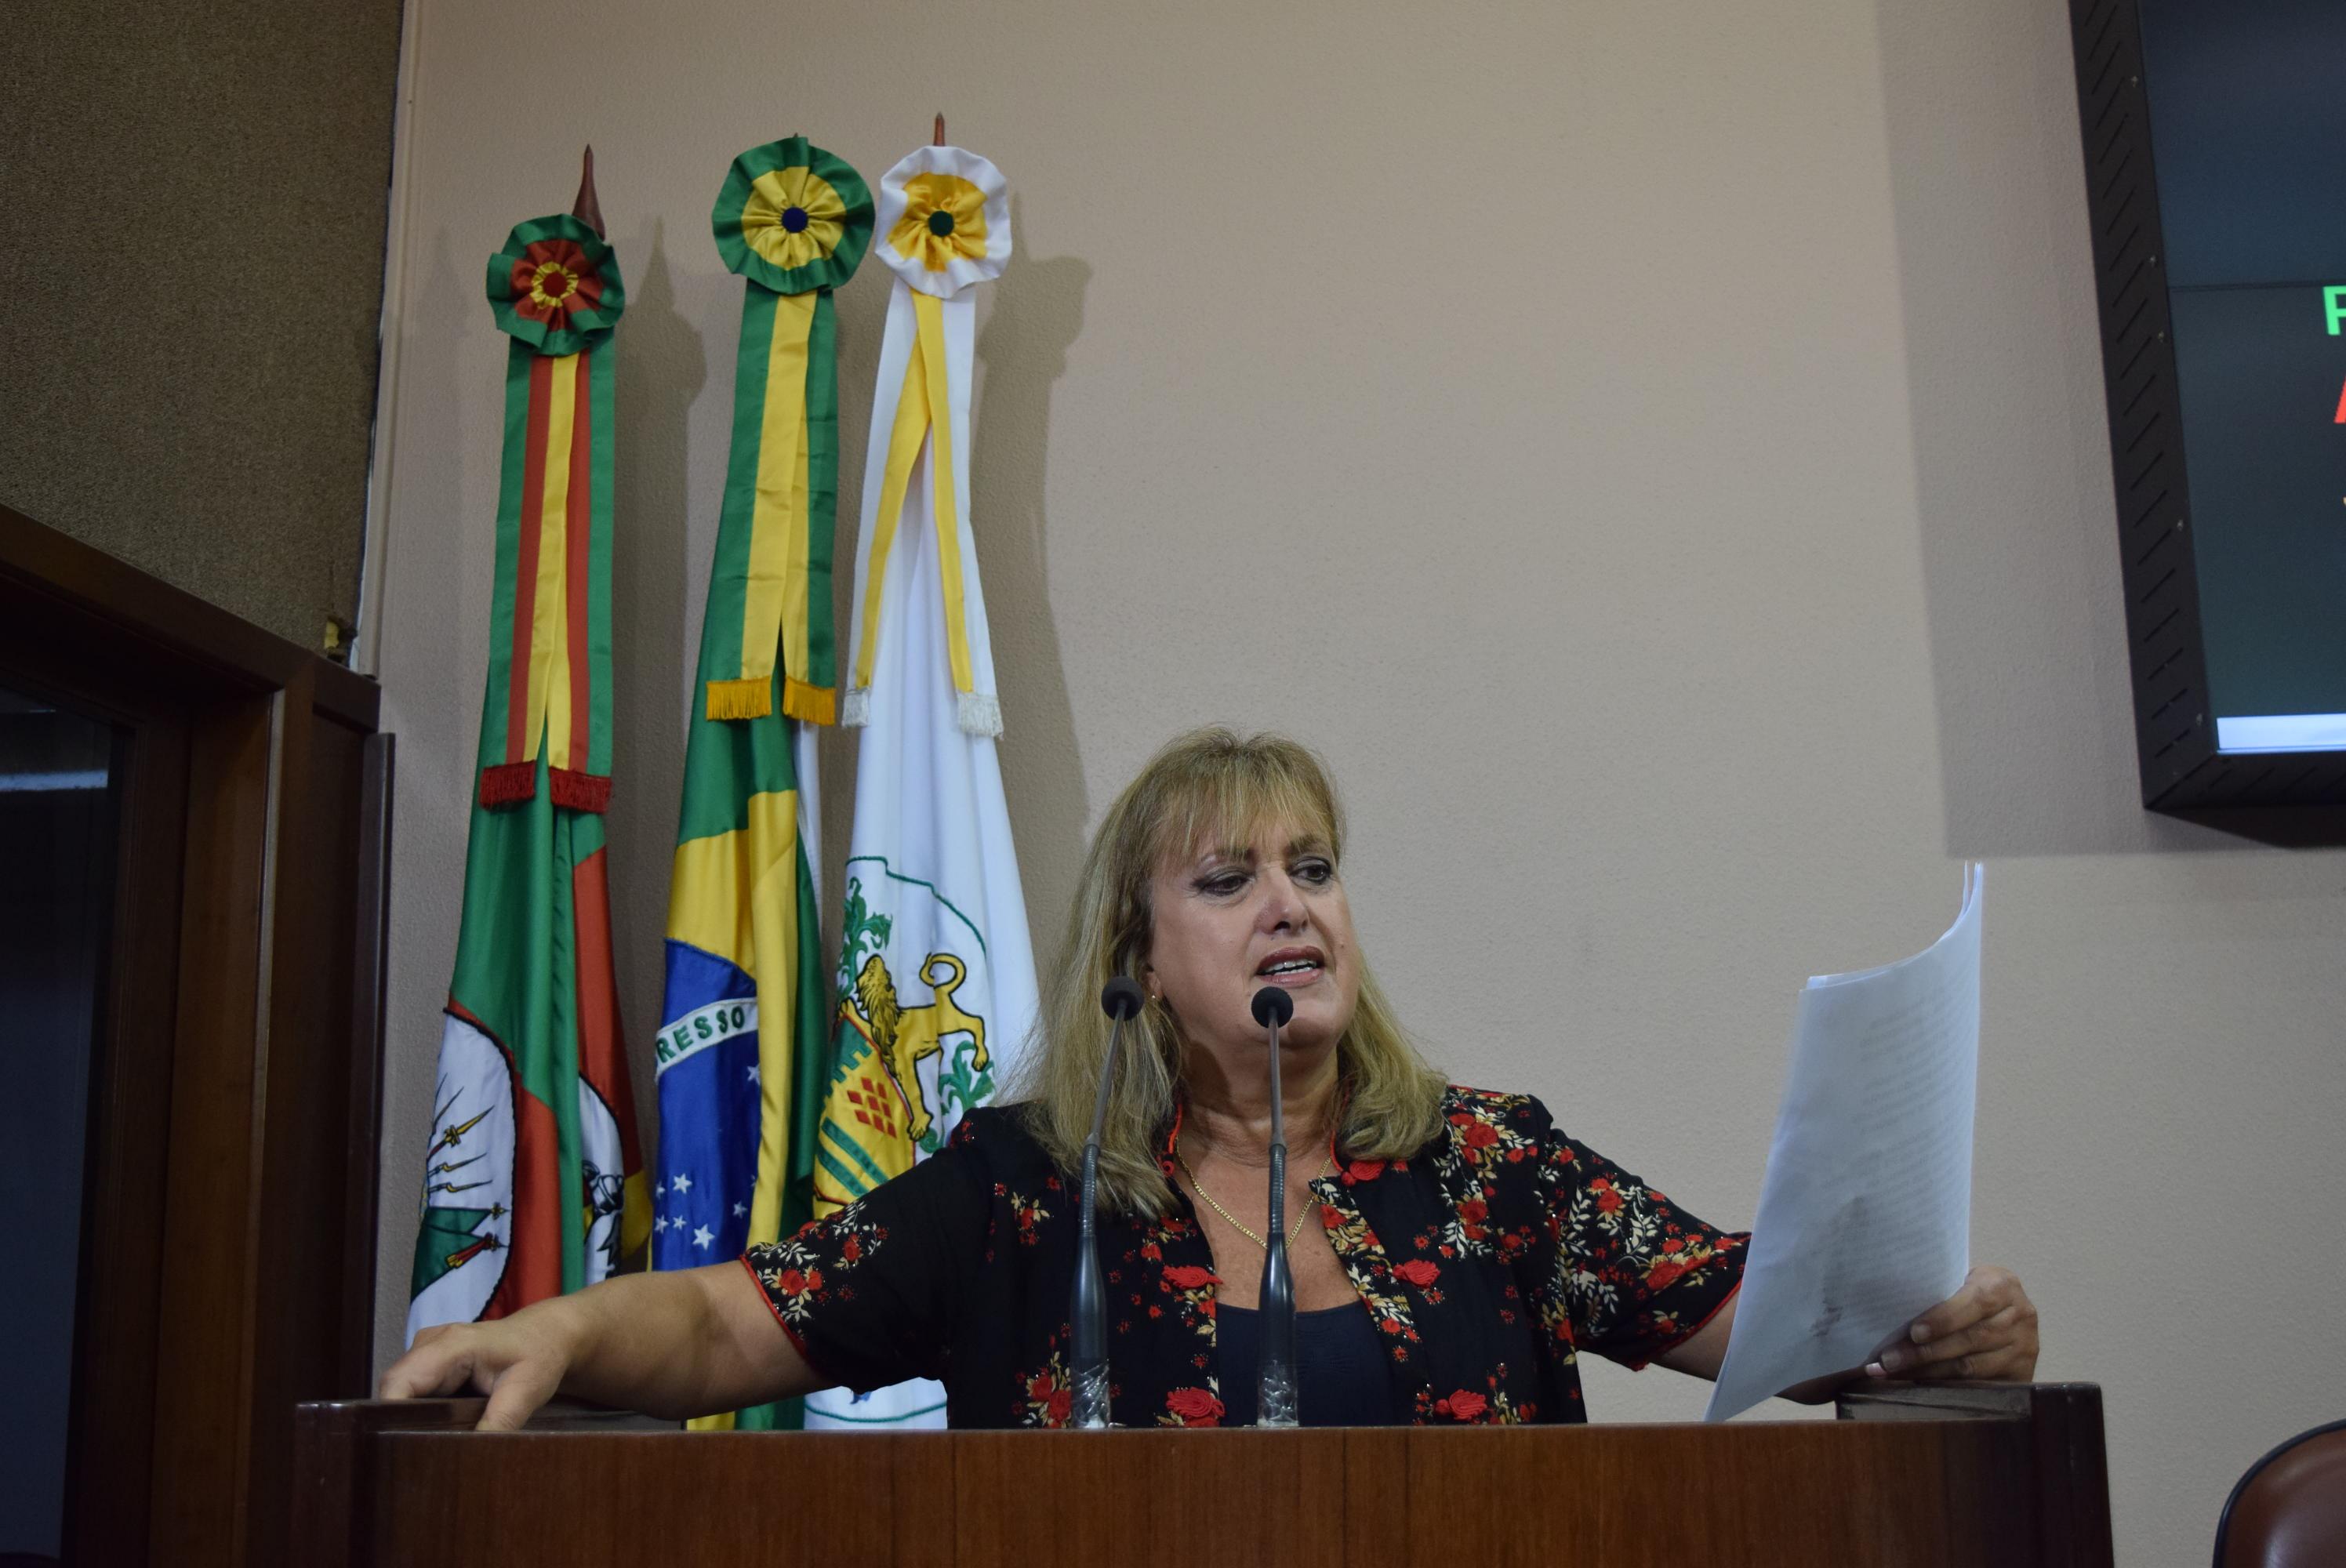 Ana Corso critica processo de impeachment a que está sendo submetida a primeira mulher presidente do Brasil